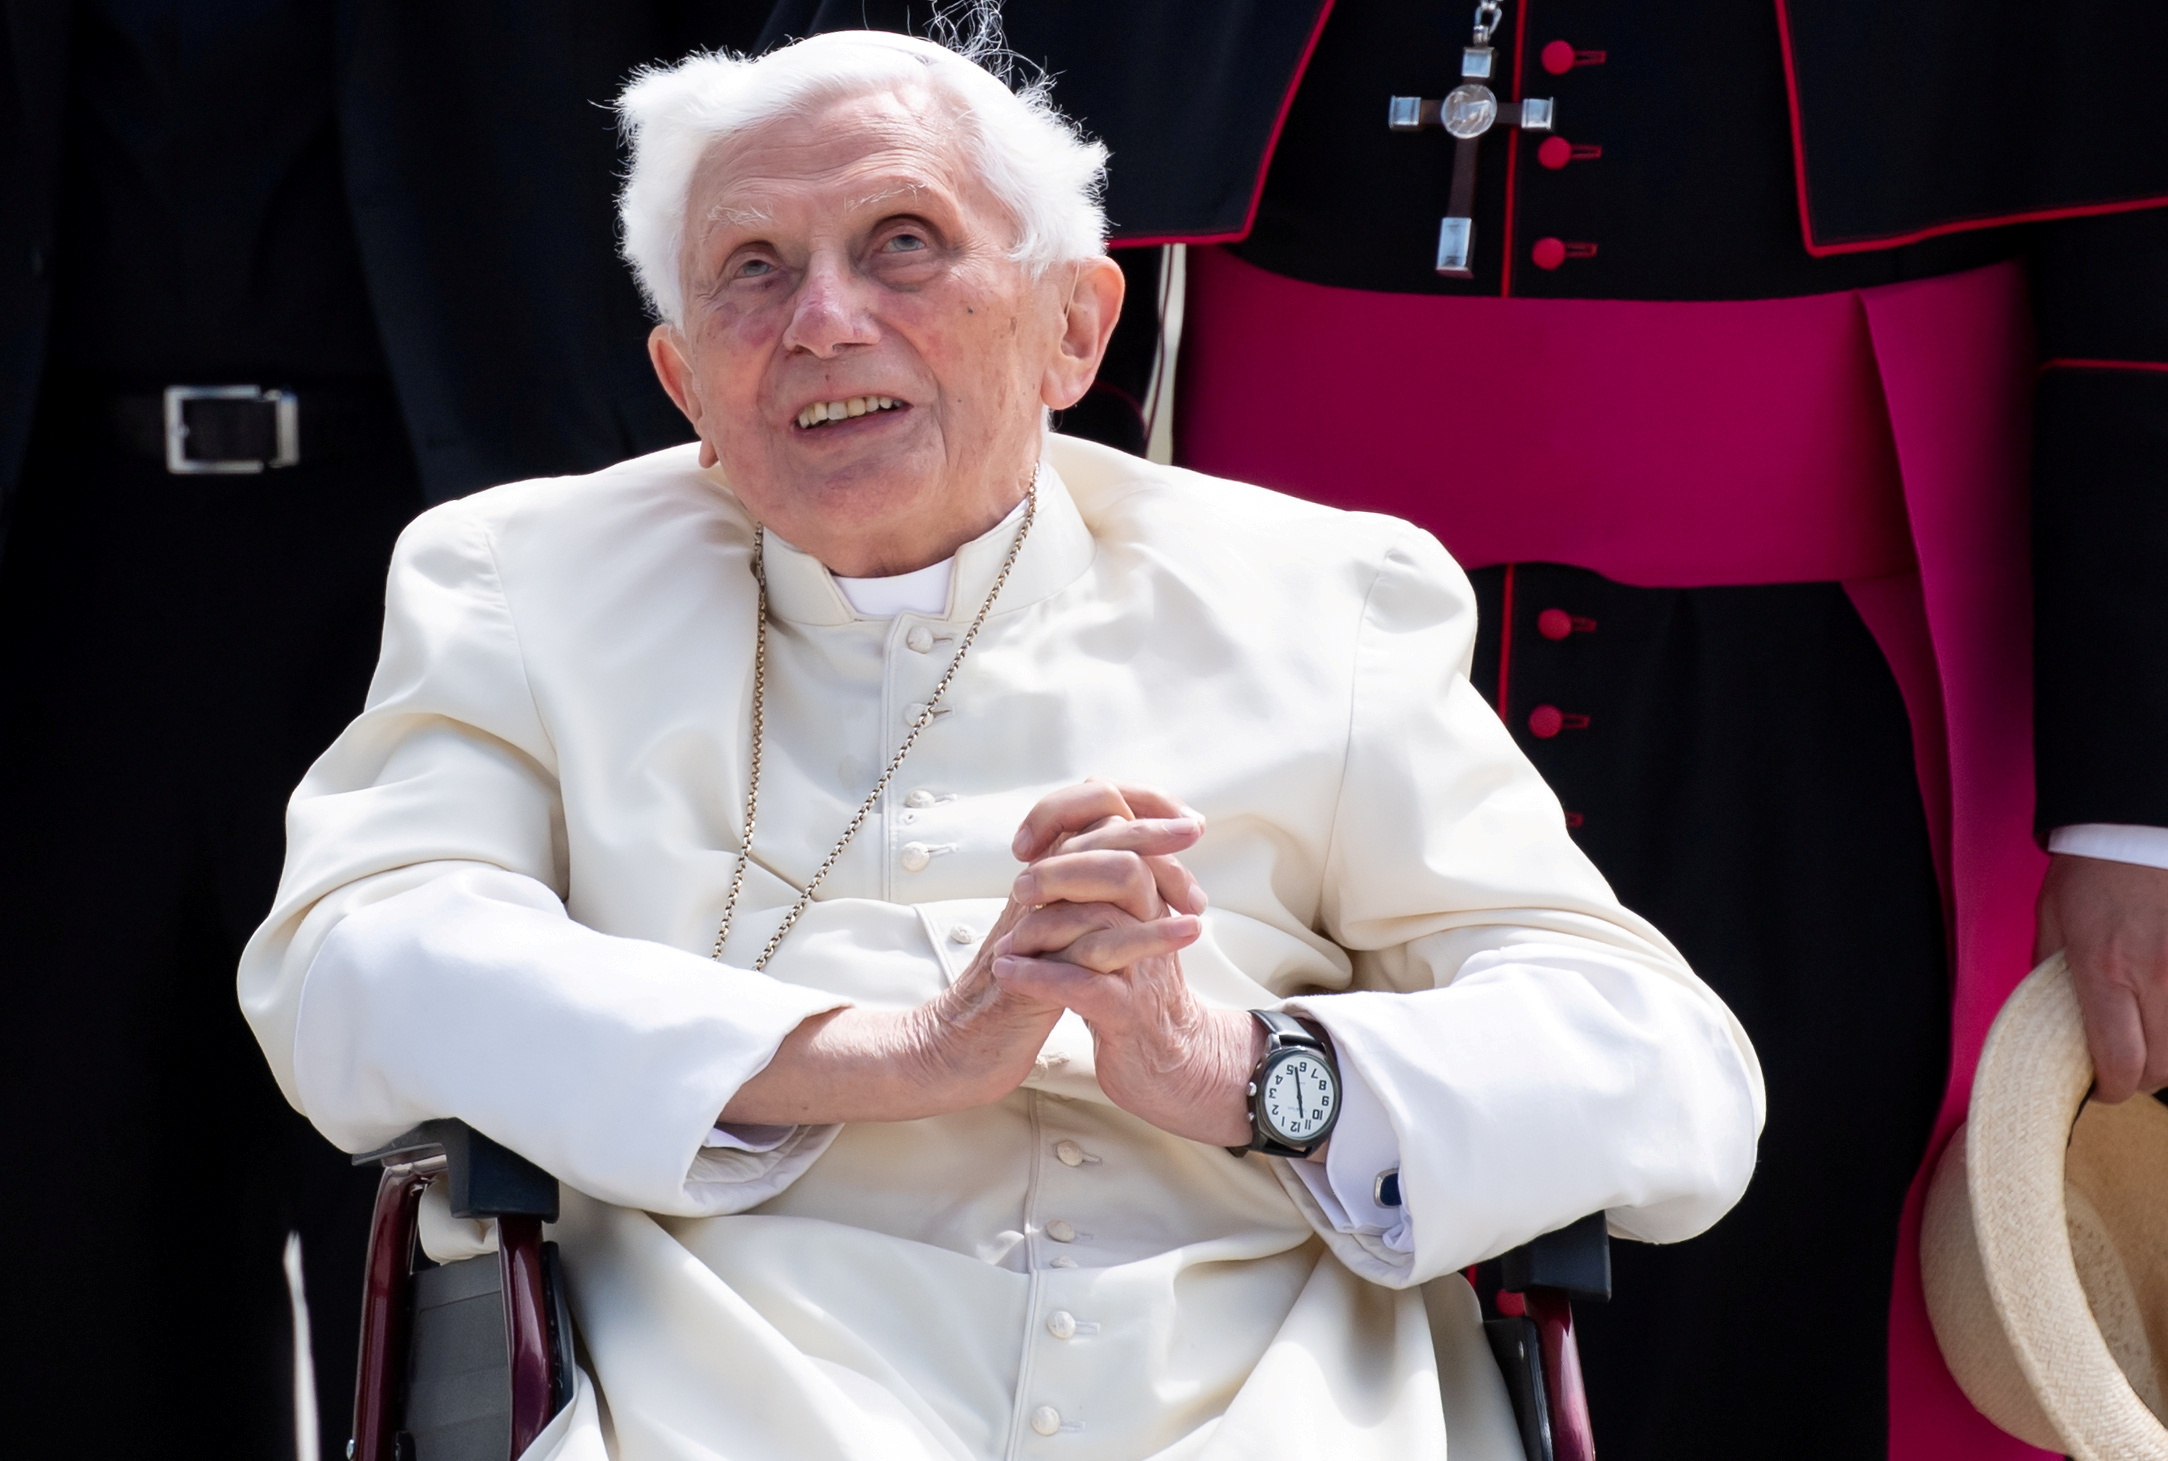 Benedicto XVI tiene dificultades para hablar, reveló el cardenal Grech